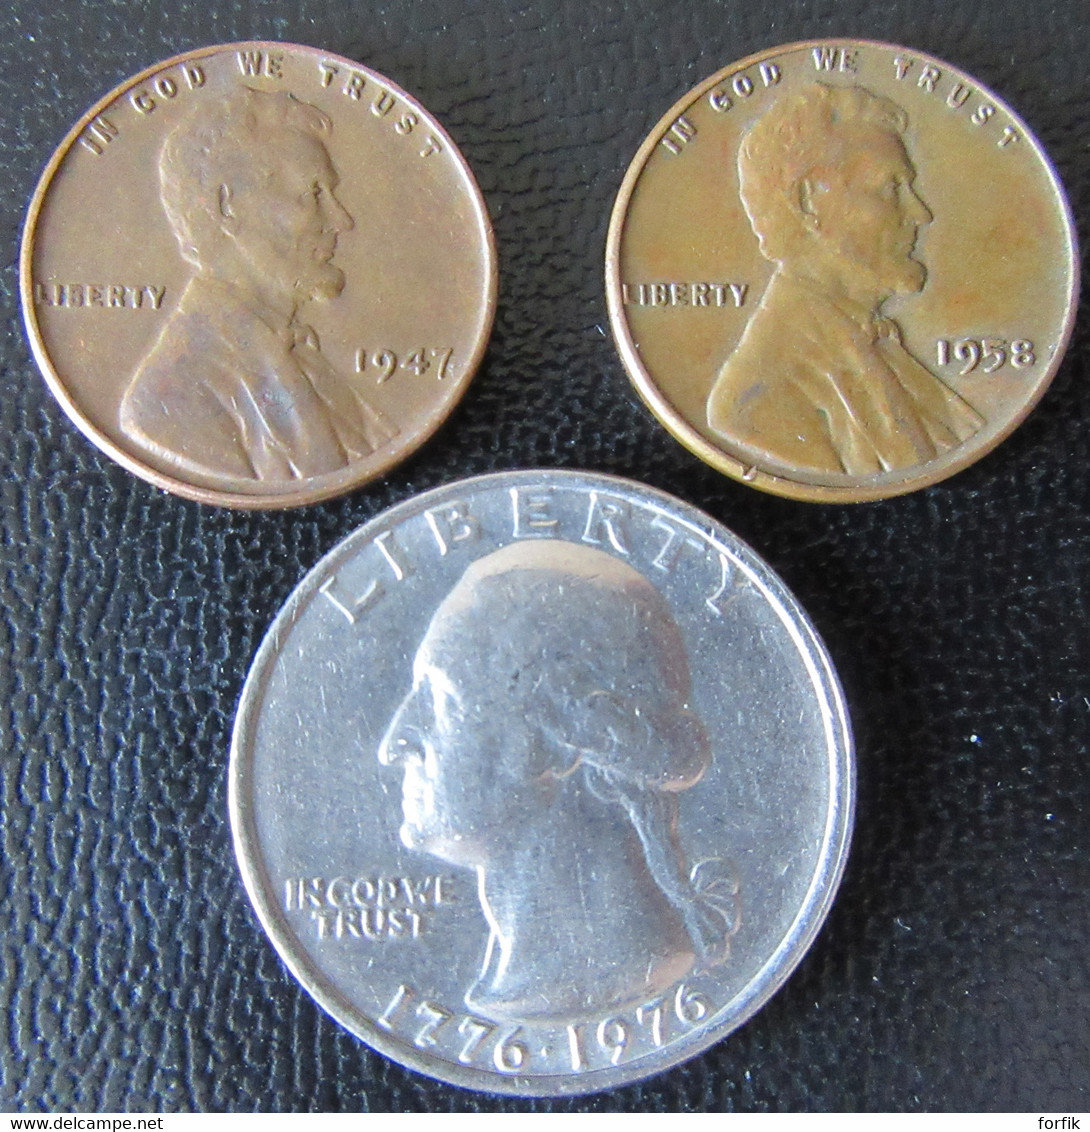 Etats-Unis / United States - 2 X One Wheat Cent 1947, 1958 + Quarter Dollar Bicentenial 1976 - Sammlungen